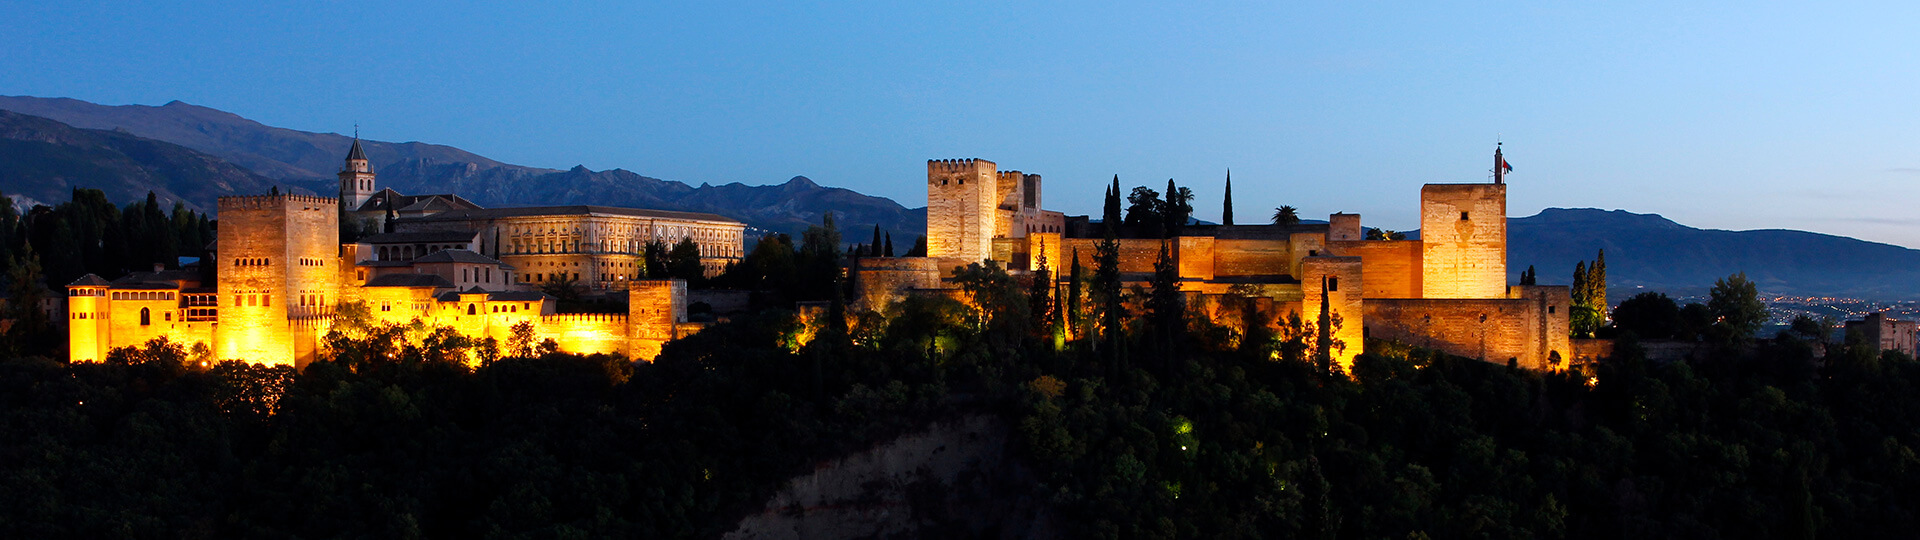 Panoramablick der Alhambra auf Granada bei Nacht